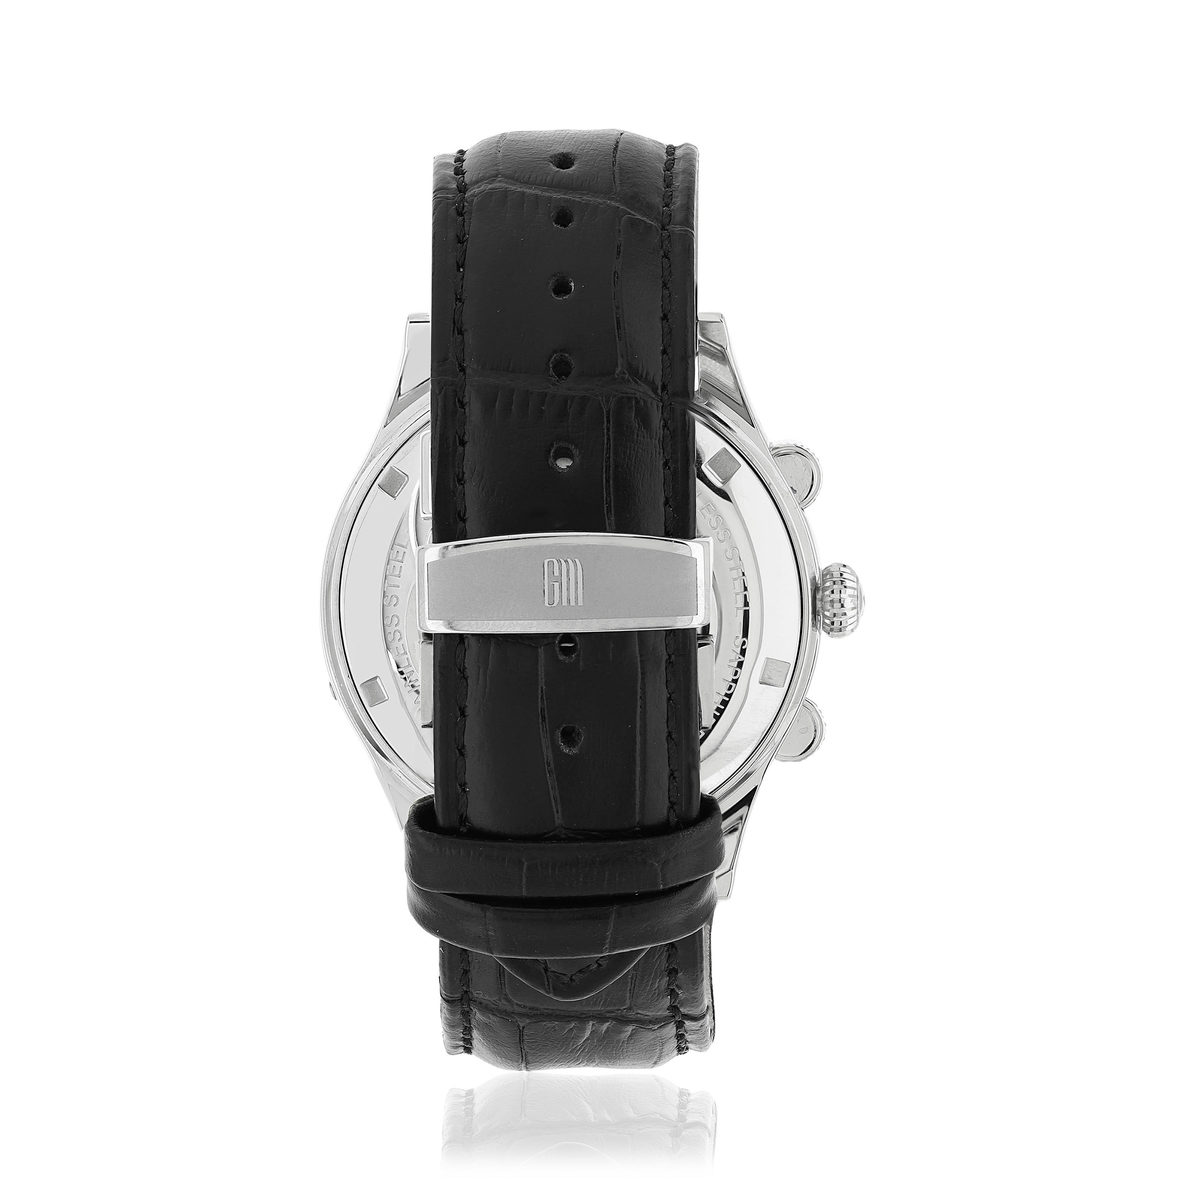 Montre MATY GM automatique chronographe cadran noir bracelet cuir noir - vue 3